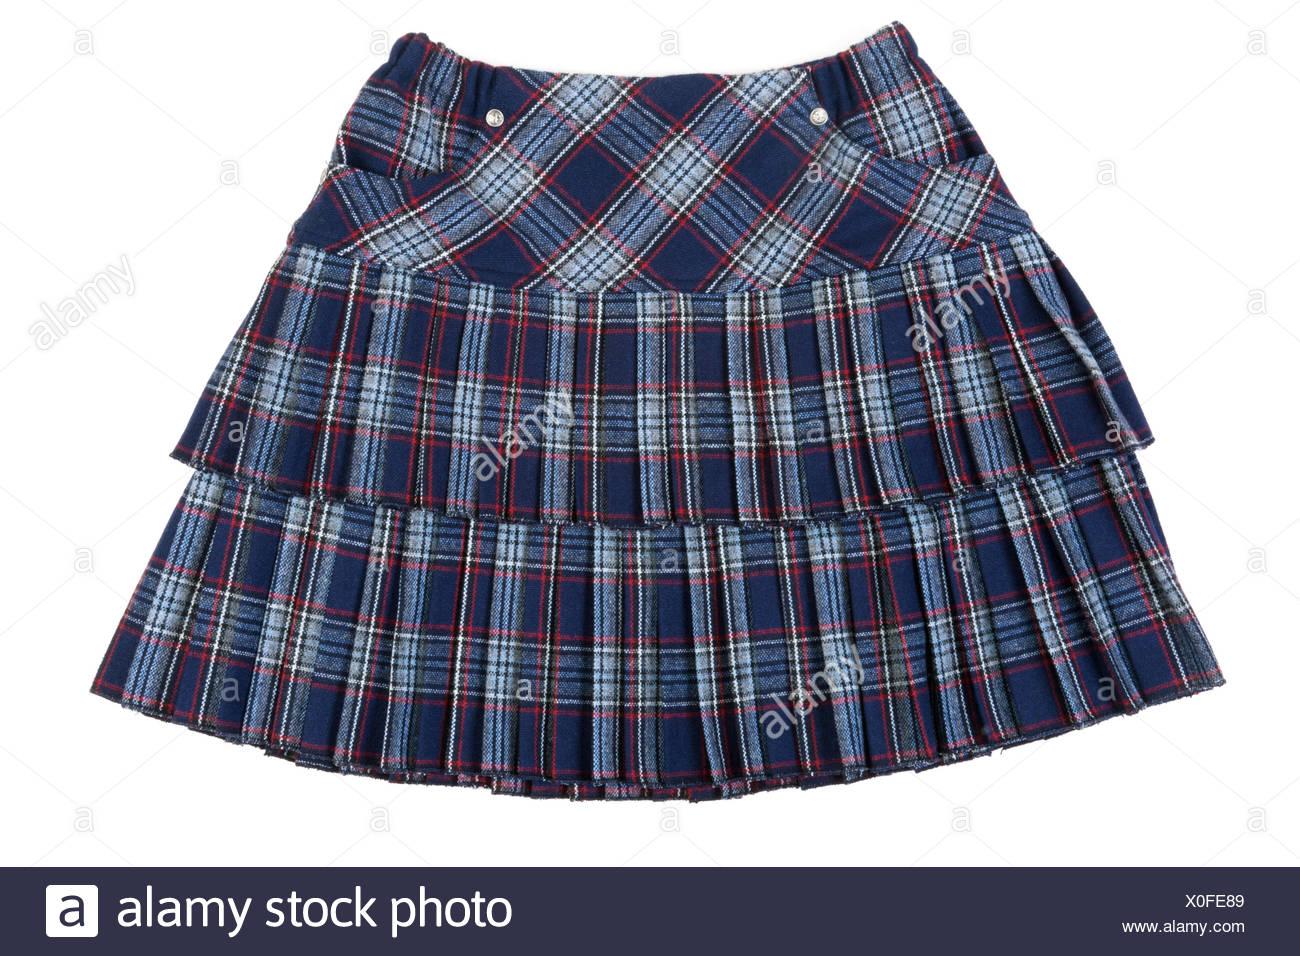 White Short Mini Skirt Miniskirt Stock Photos & White Short Mini Skirt ...